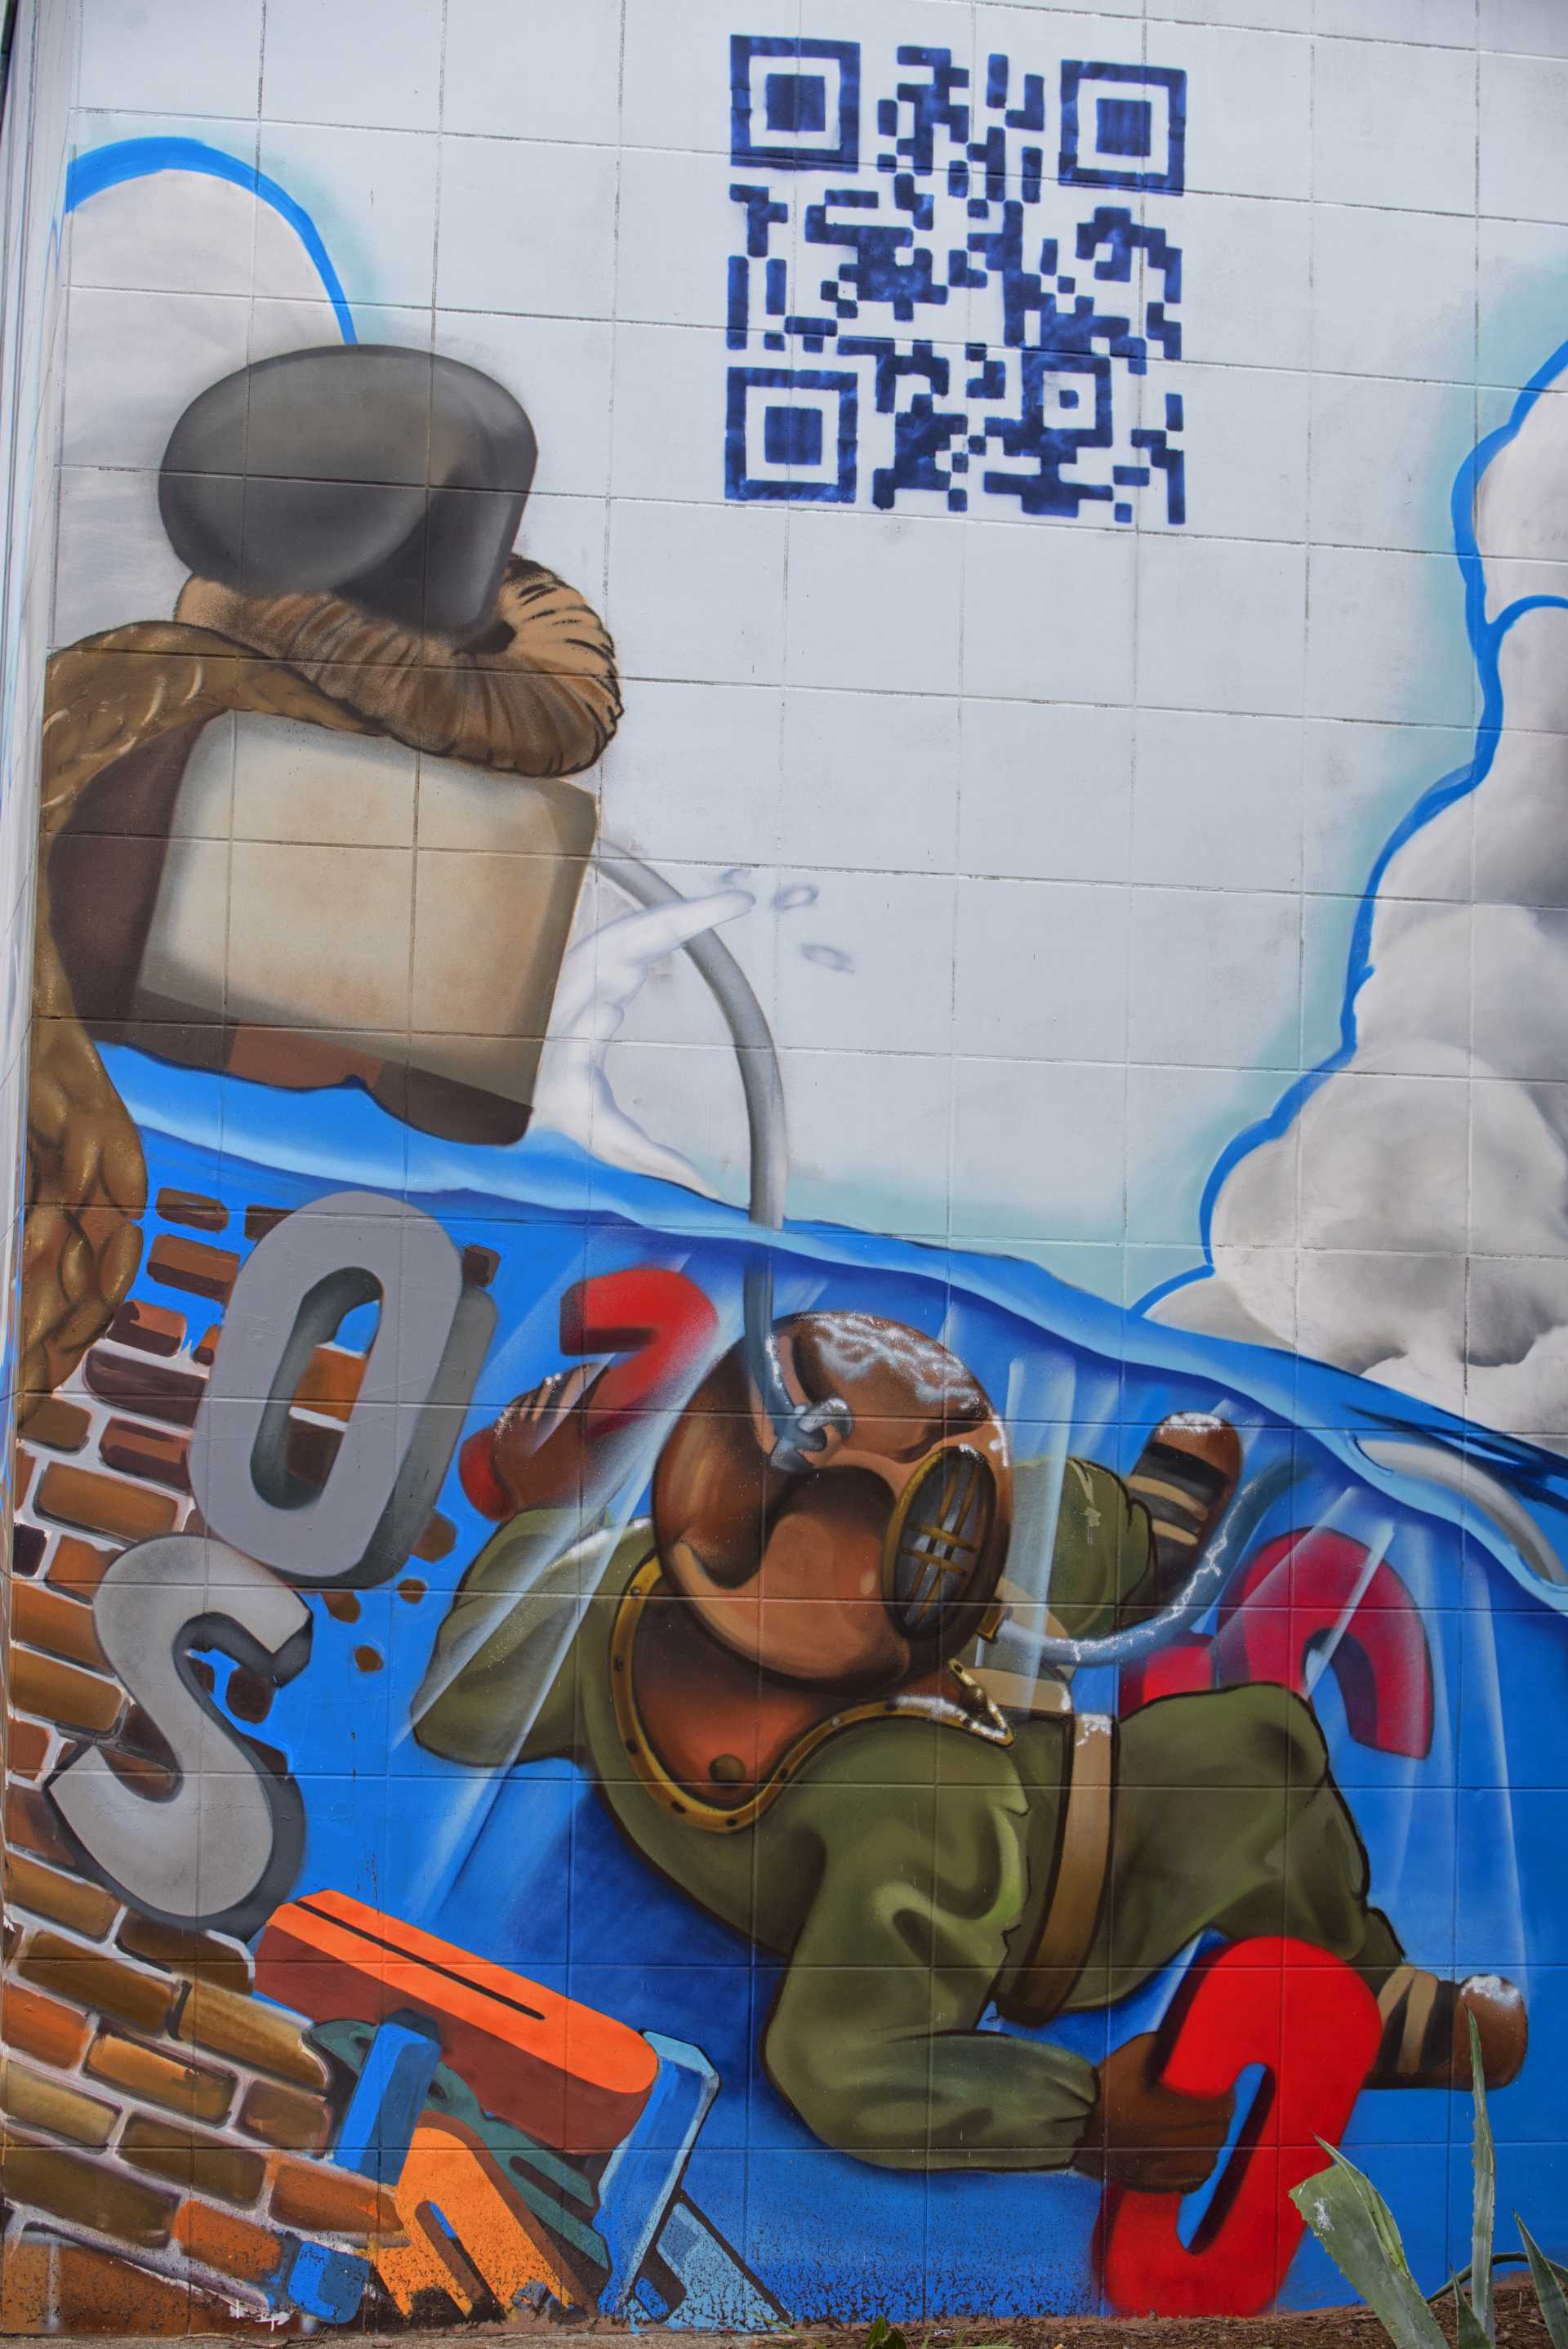 Ne-Os, il poema murale alla stazione Lido Nord